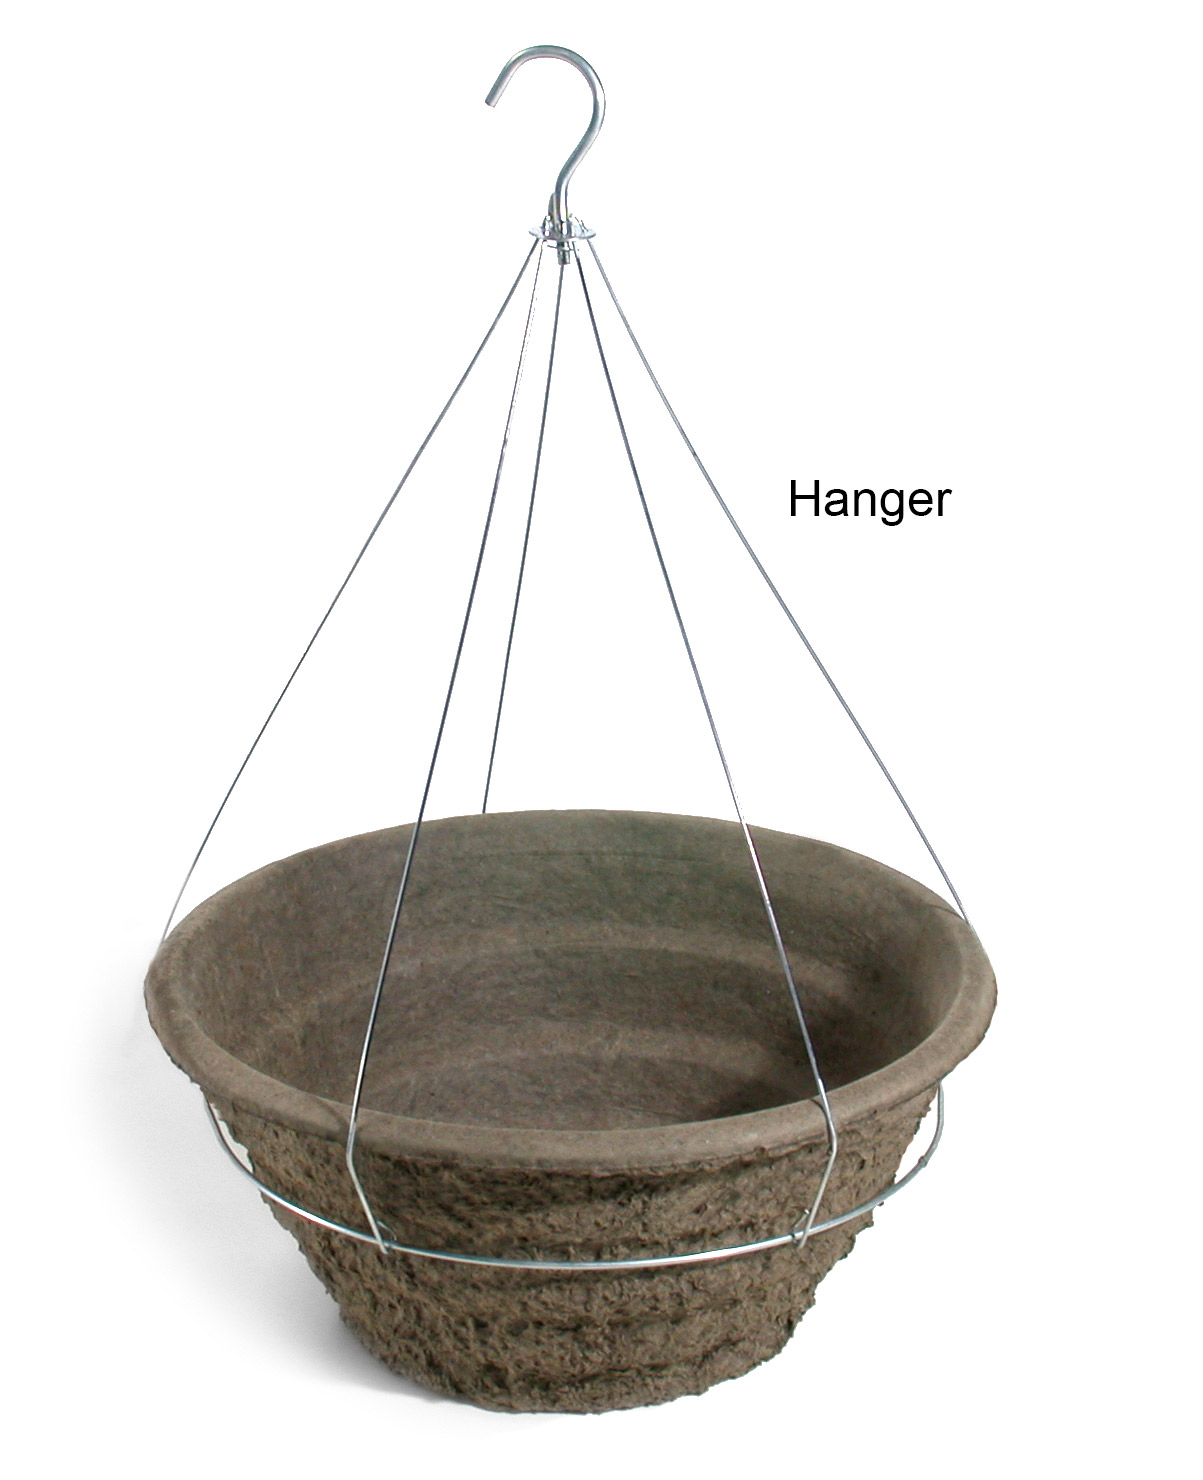 18 Garden Basket Hanger - 20 per case - Hangers